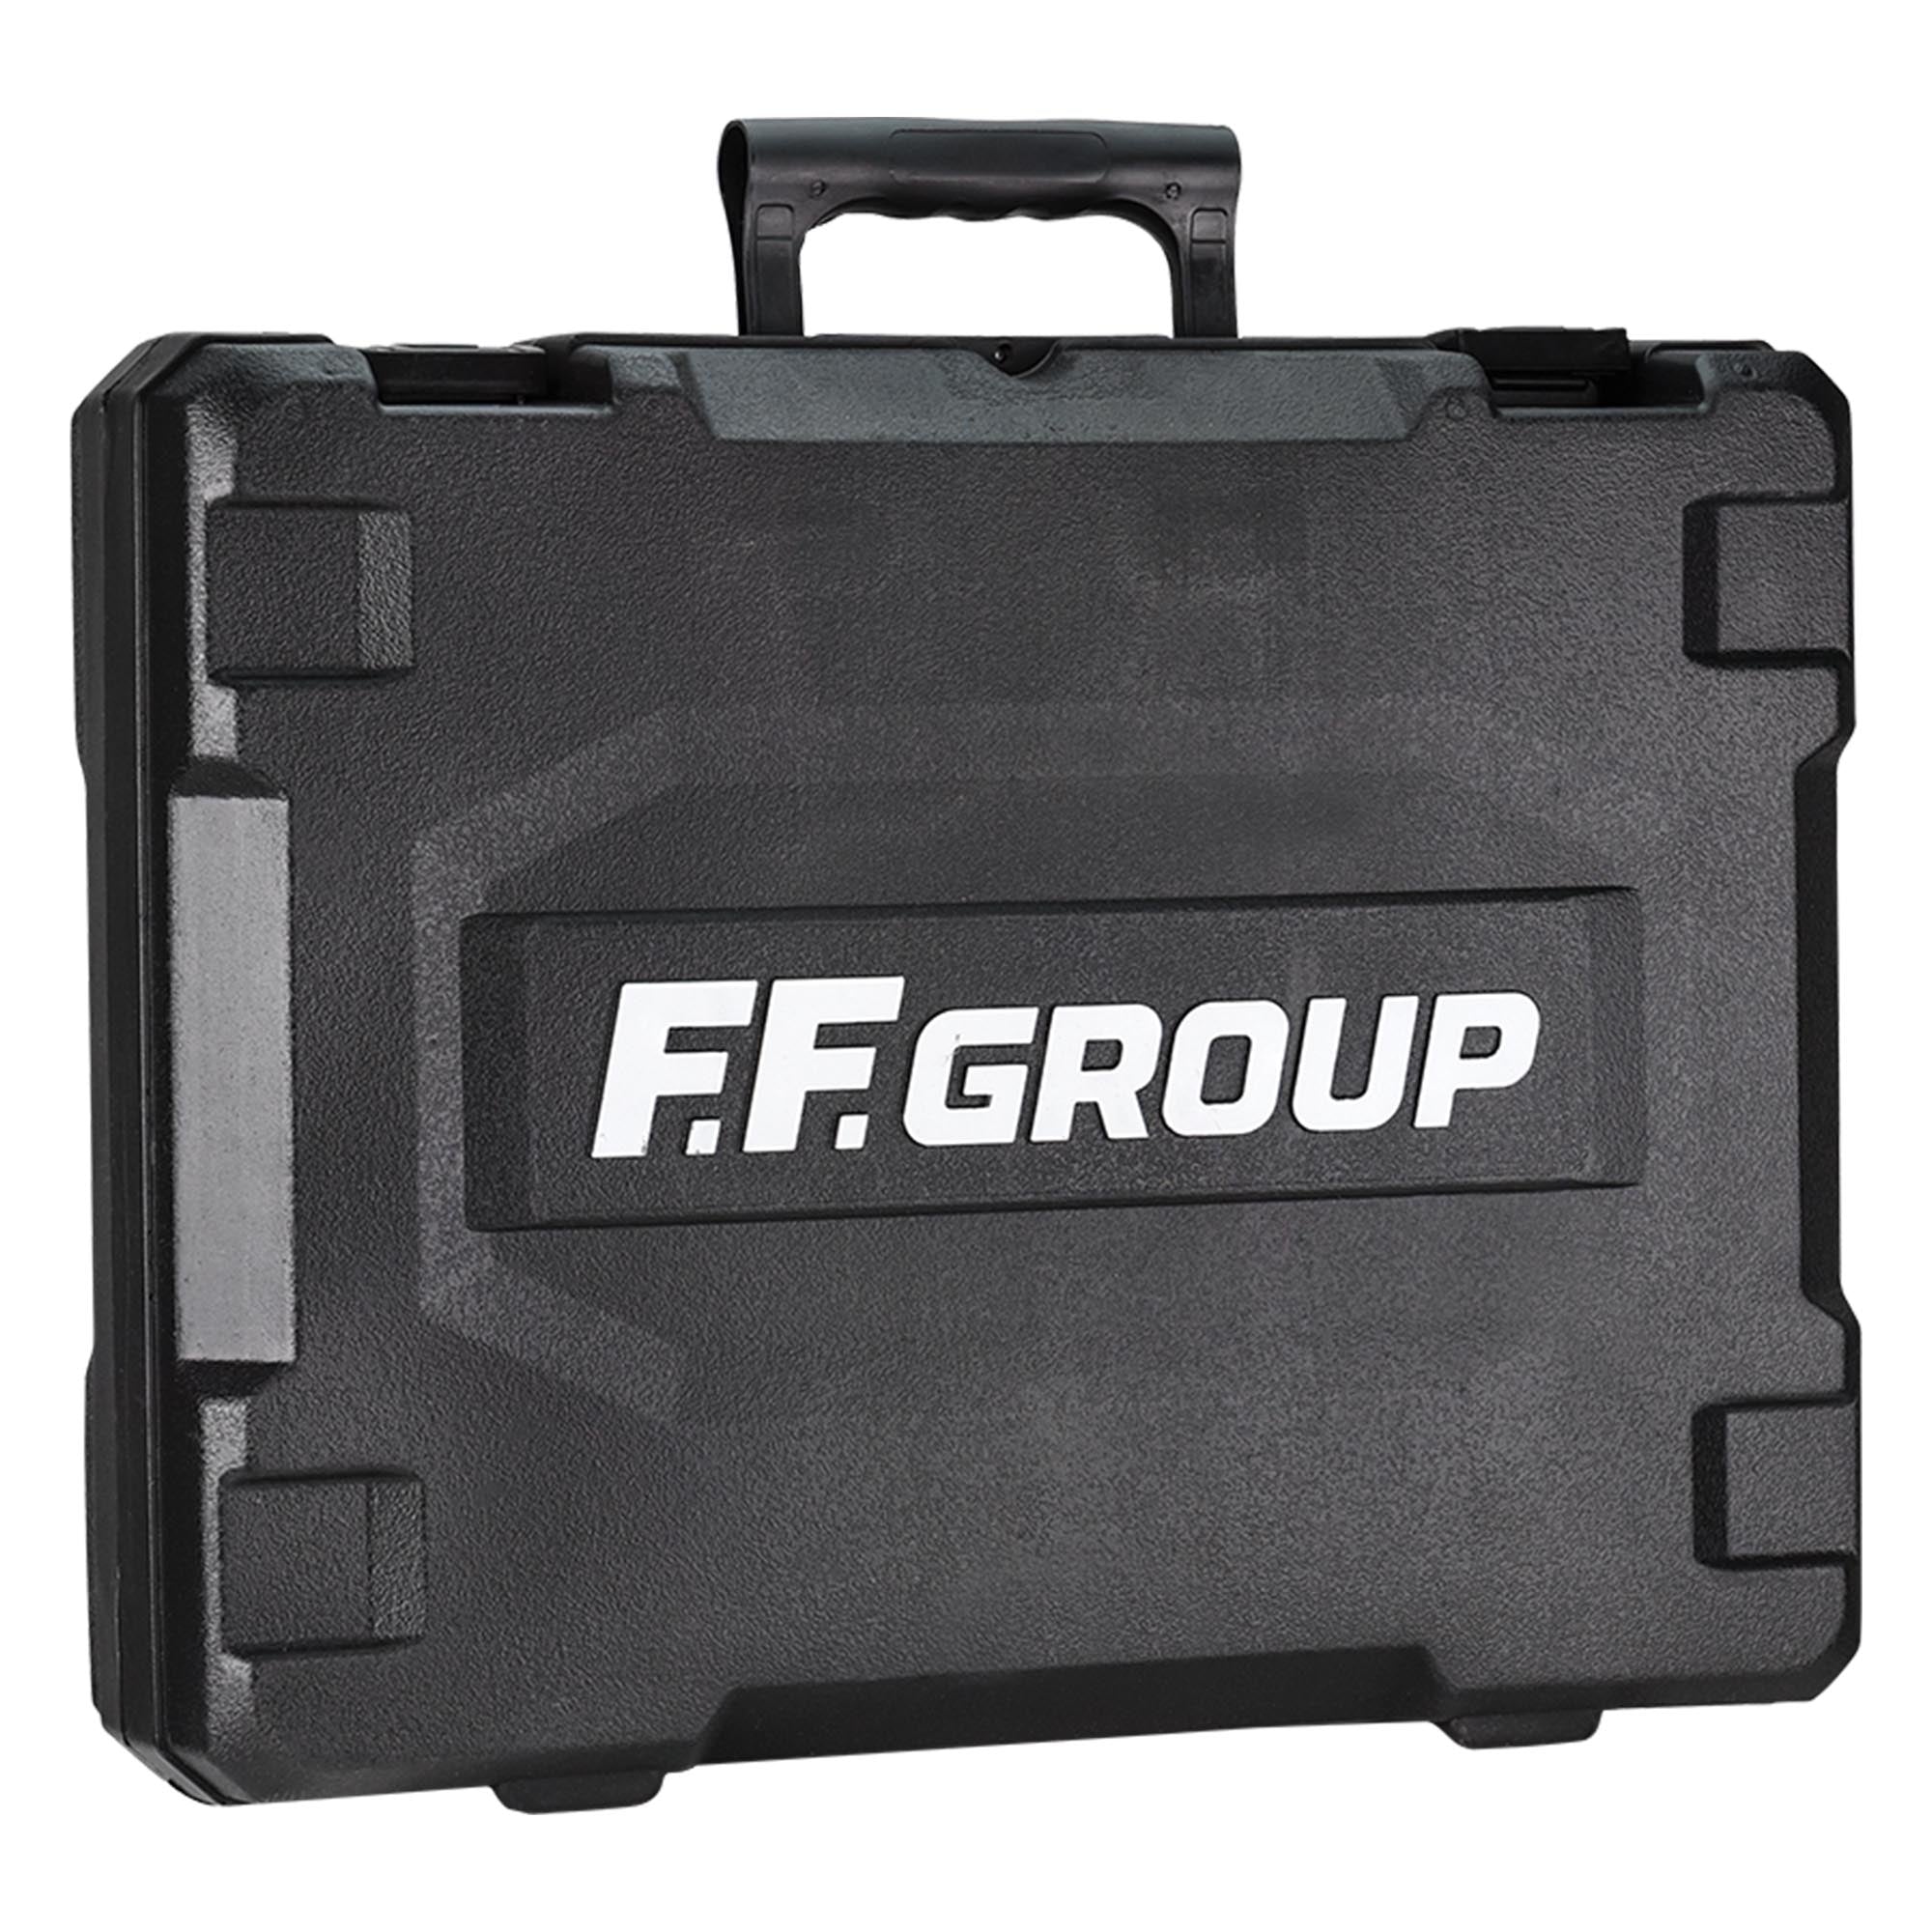 Marteau Perforateur FFgroup RH 2-26 PLUS 850W